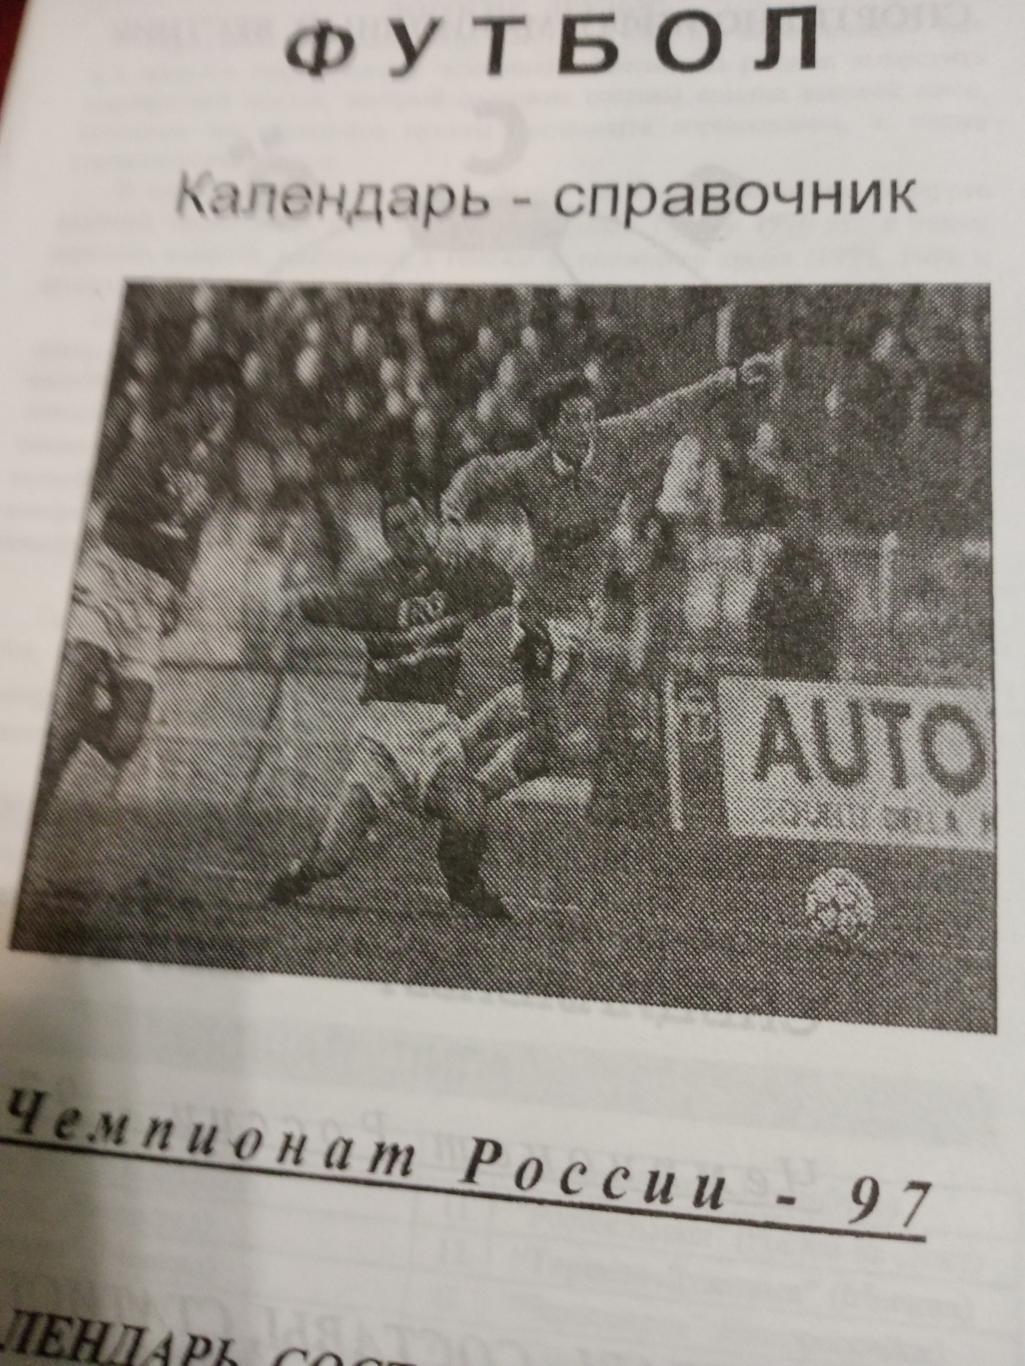 Футбол. Чемпионат Европы - 97. Издание - Москва